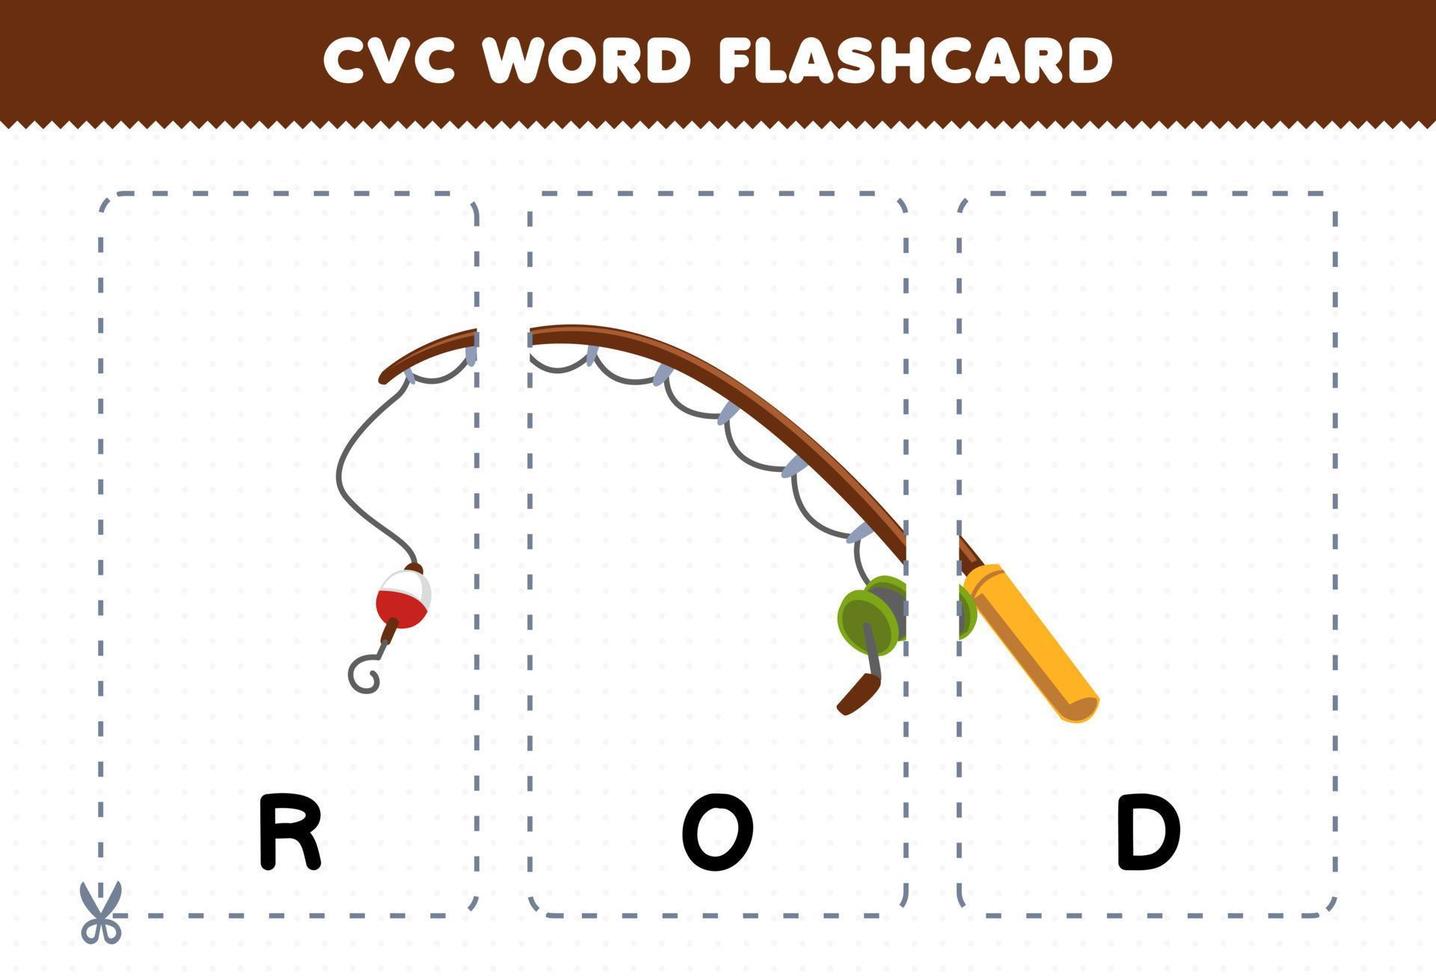 jogo de educação para crianças aprendendo palavra consoante vogal consoante com ilustração de vara de pescar bonito dos desenhos animados flashcard imprimível vetor